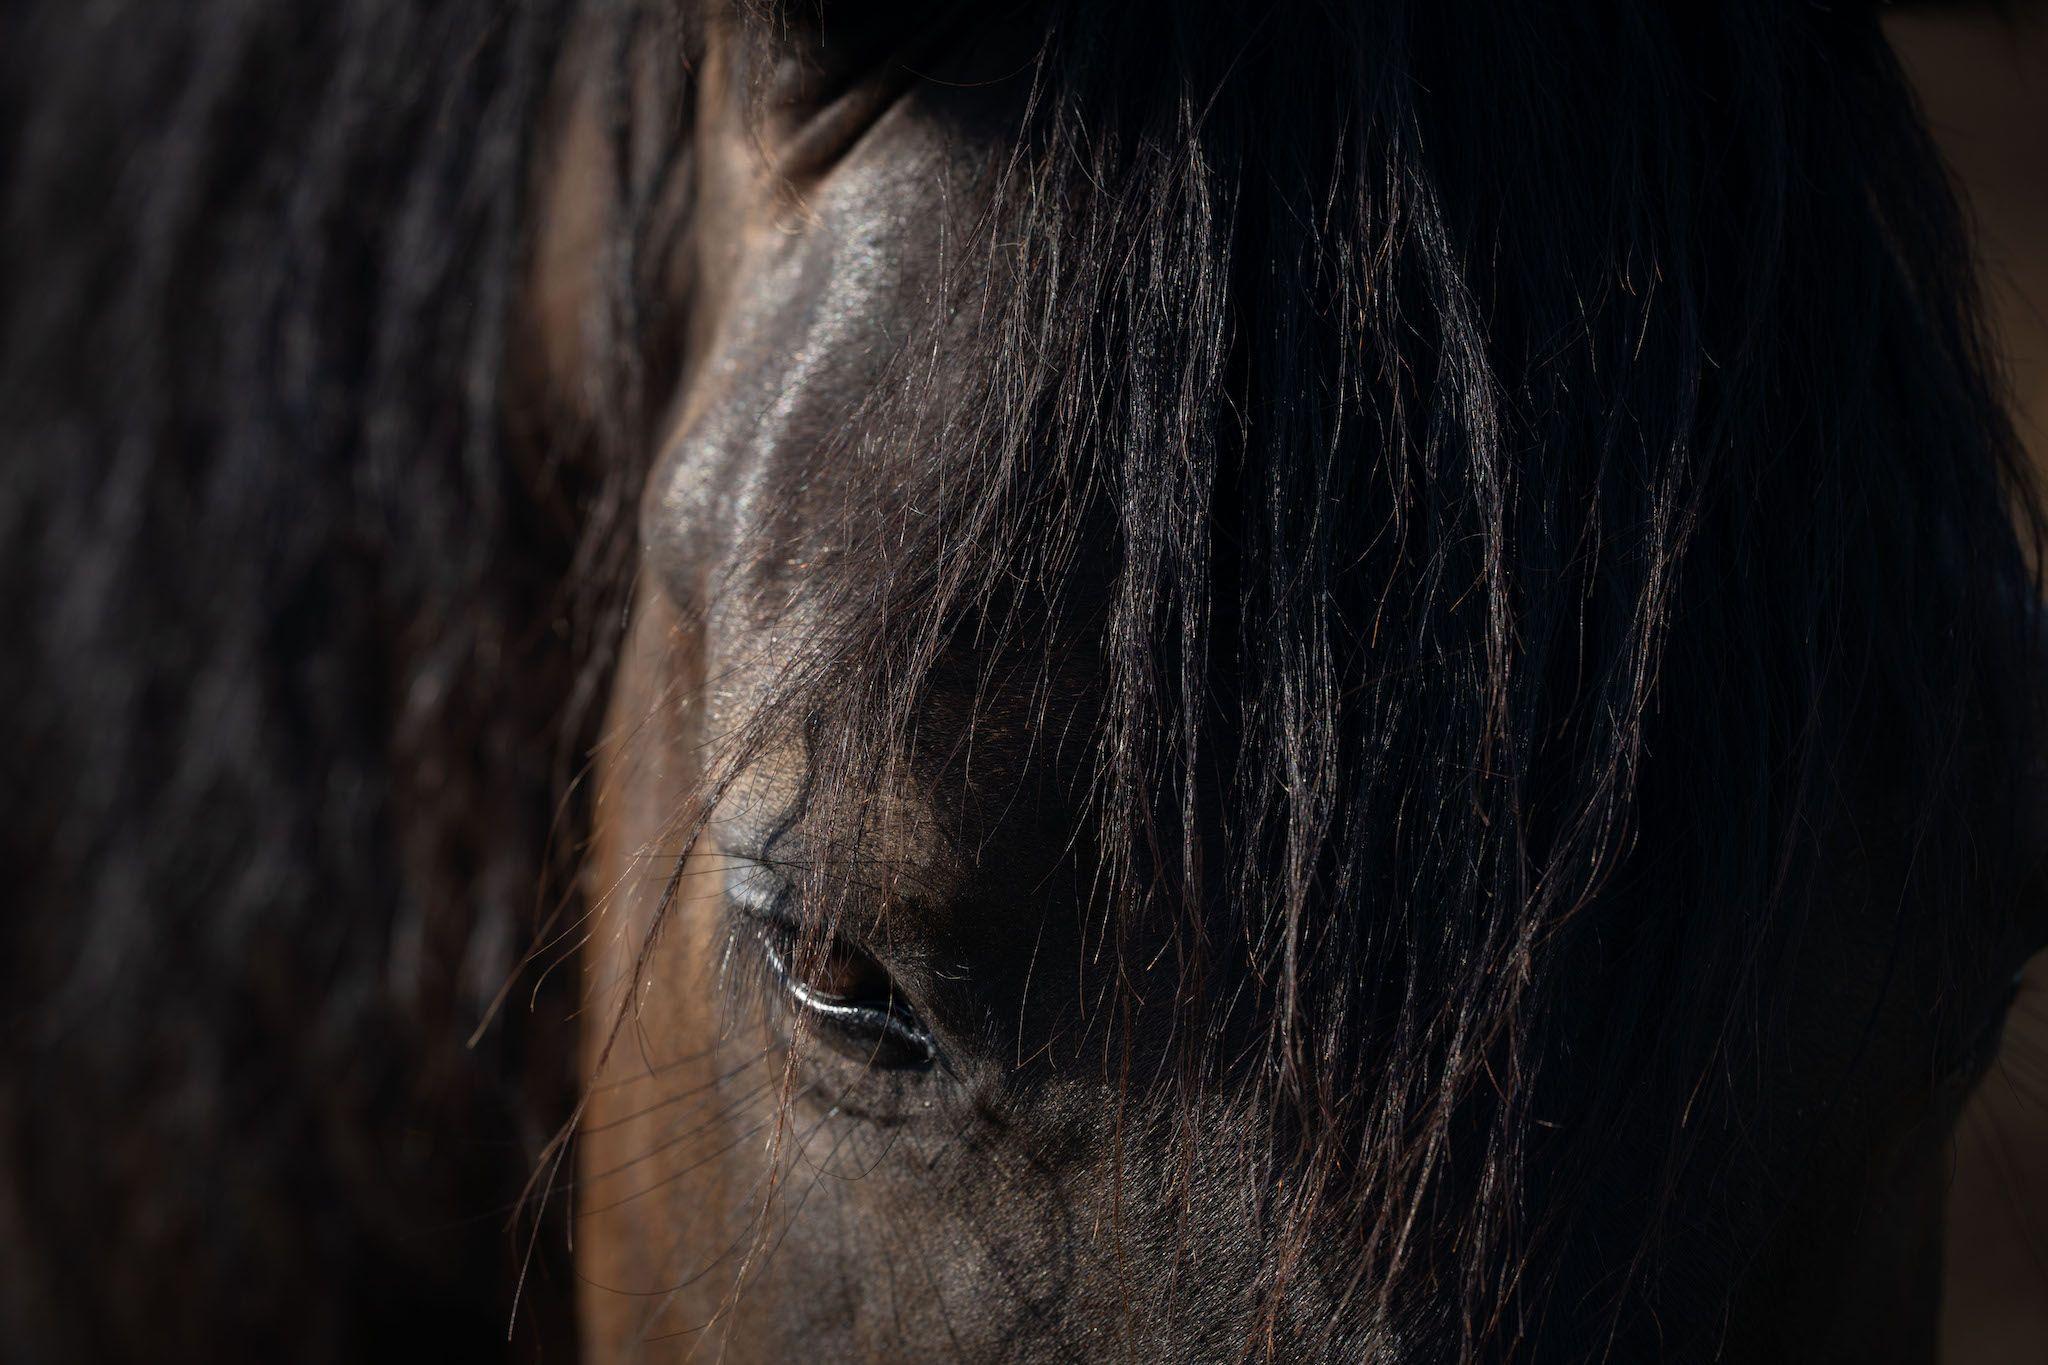 Piticu, care e huțul, a fost cal de trasee montane la 7 cai, la Nămăiești. A avut o problemă la un tendon și l-au donat. "L-au pensionat", spune Ancuța Chivu. Foto: Andreea Câmpeanu